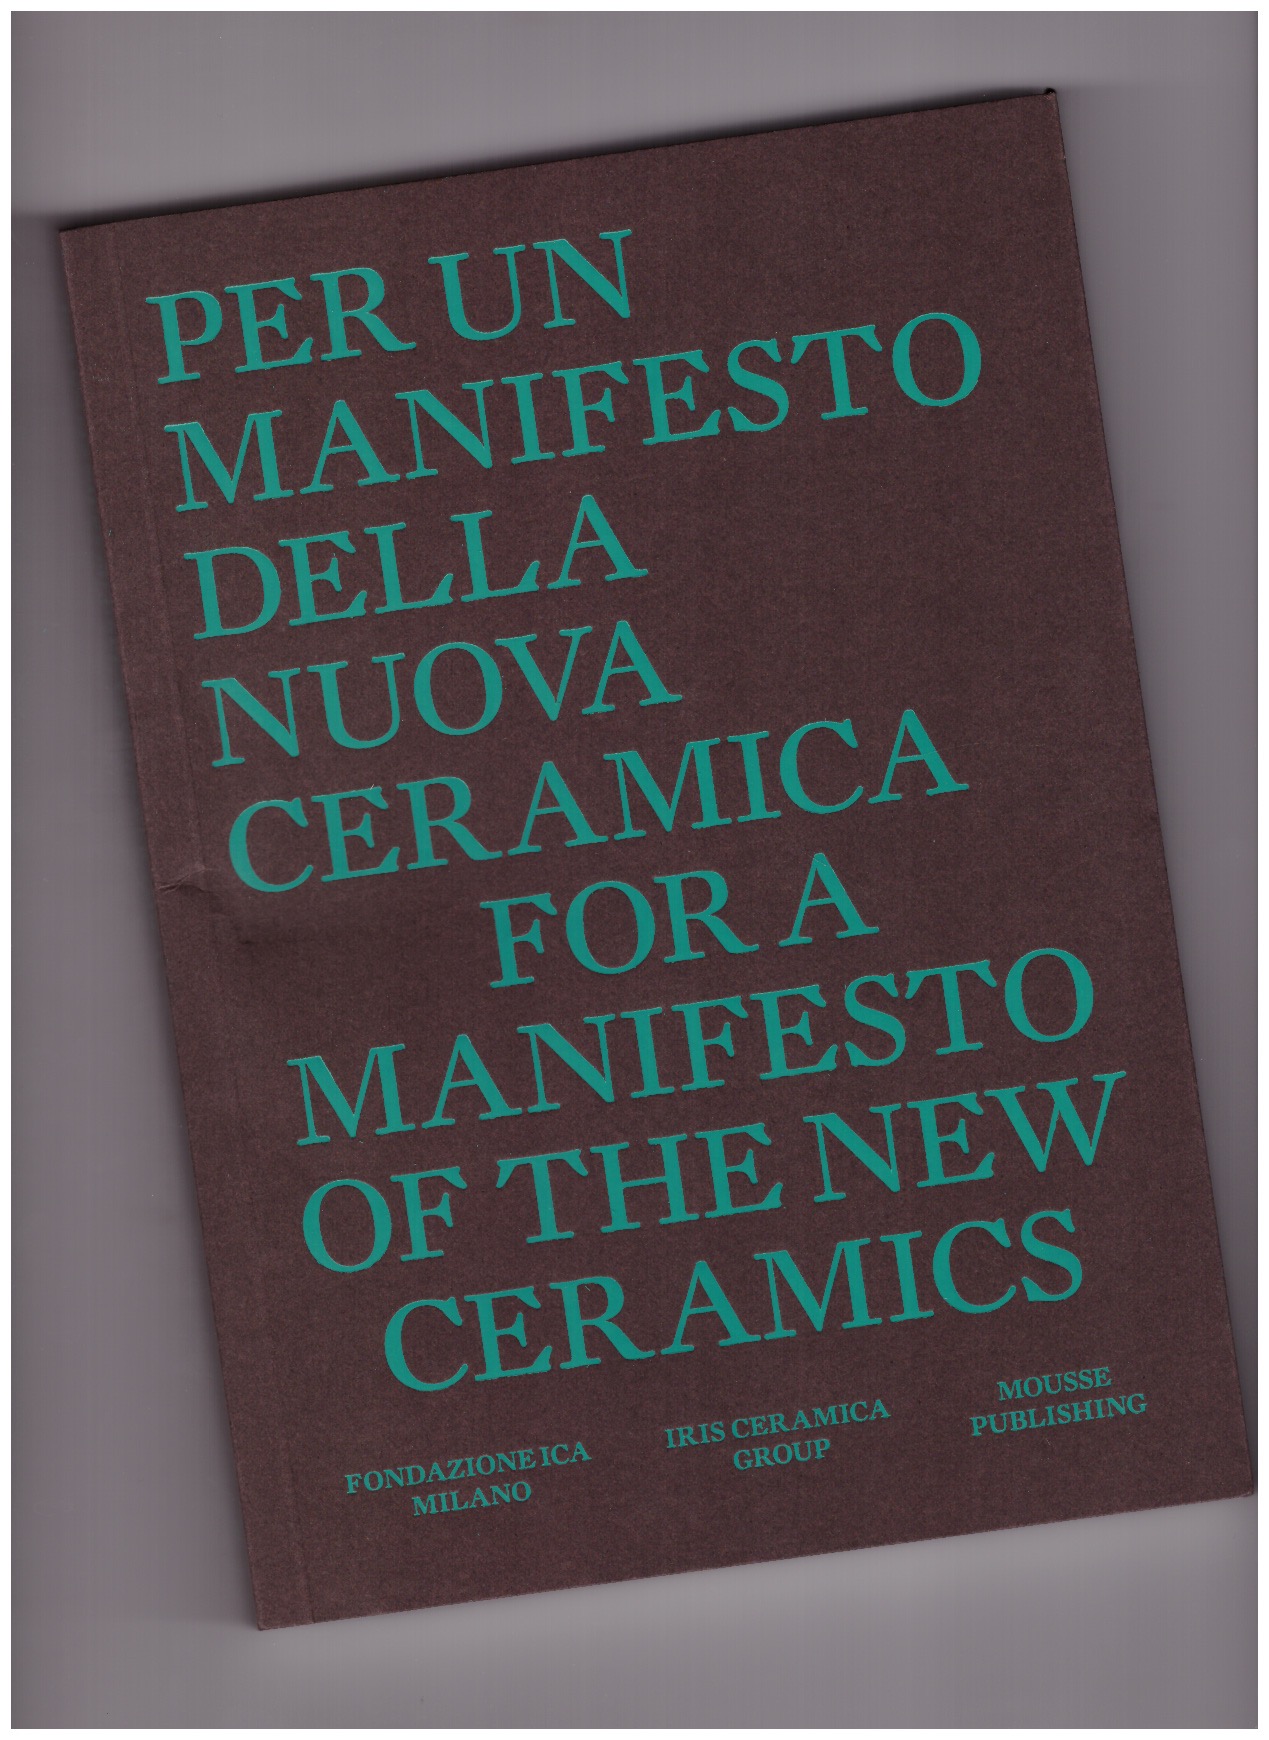 BIOLICHINI, Irene (ed.) - Per un Manifesto per una nuova ceramica / For a manifesto of the new ceramics